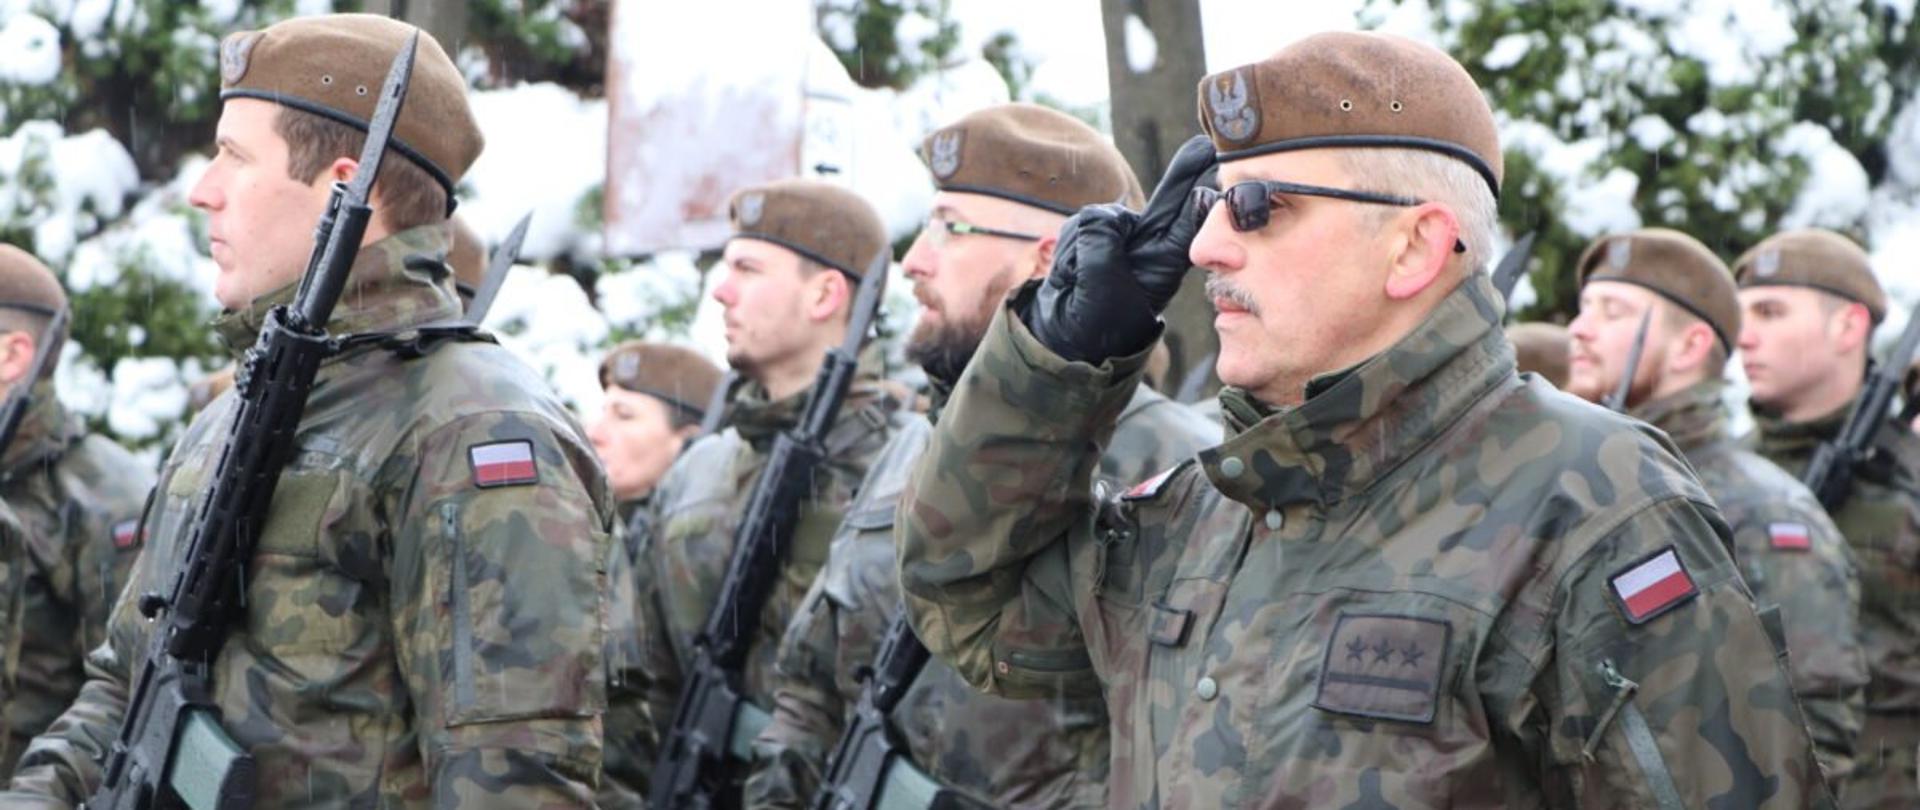 Podkarpaccy żołnierze Wojsk Obrony Terytorialnej podczas przysięgi wojskowej